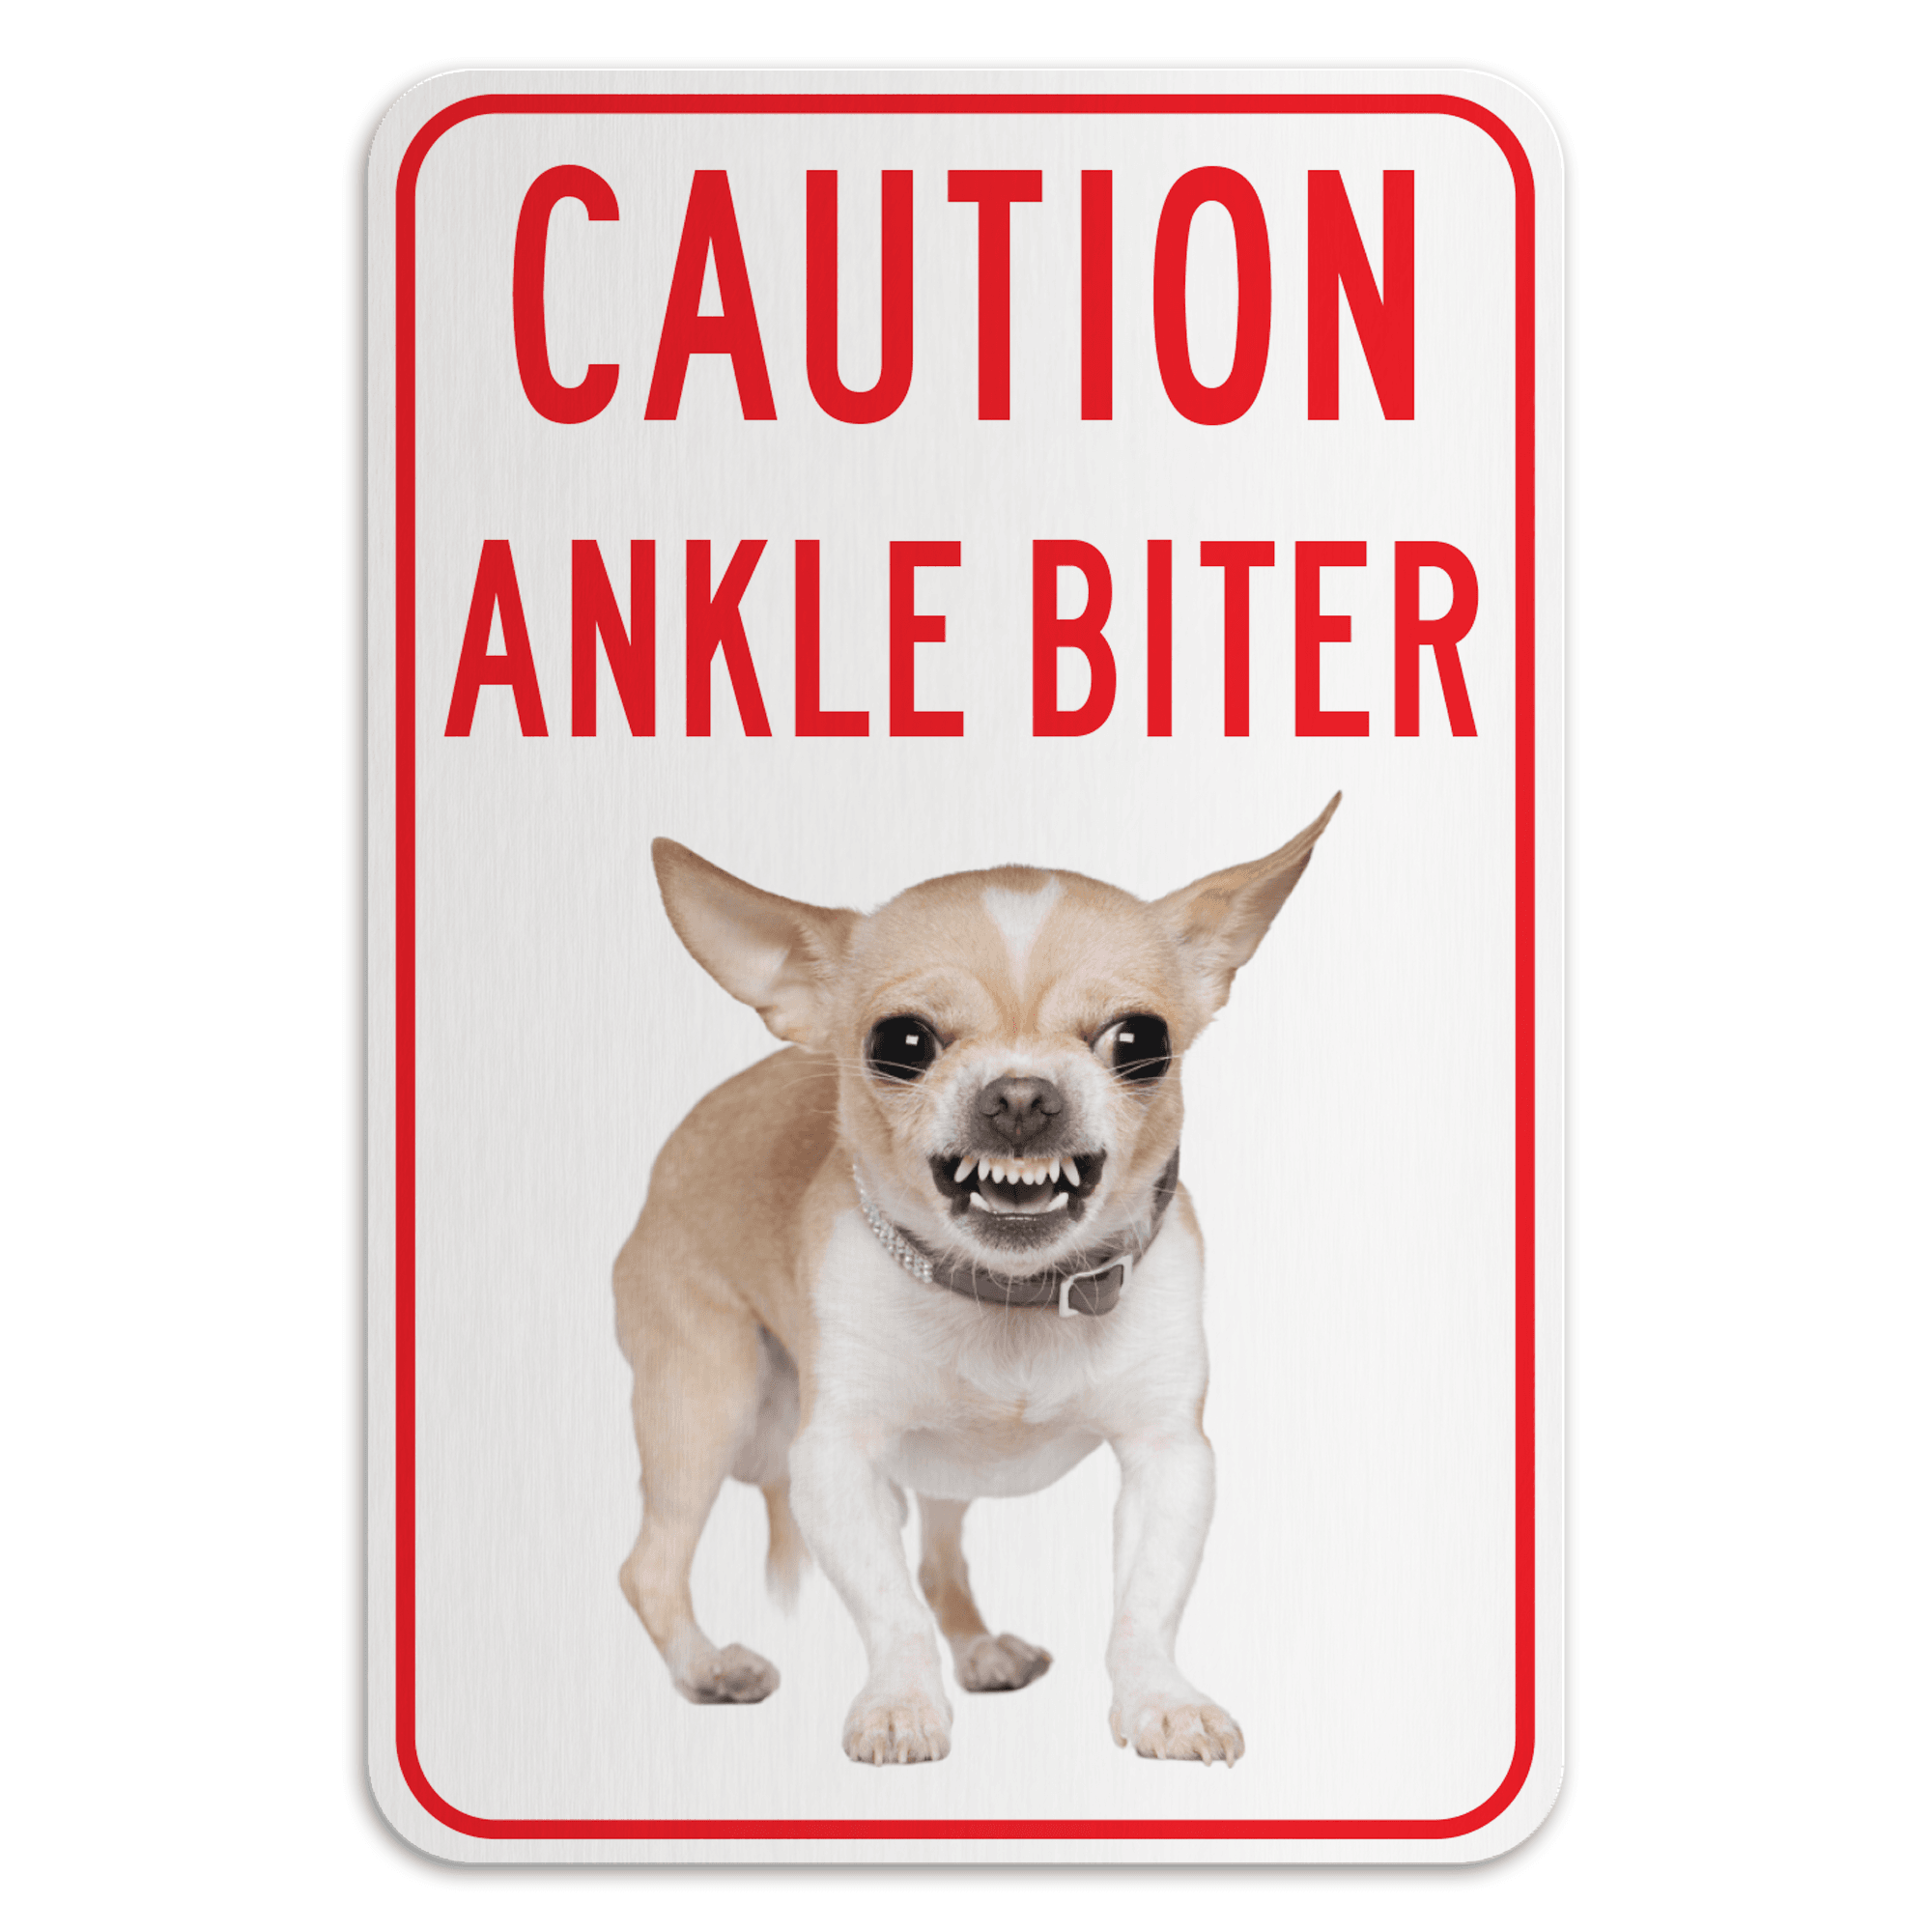 Ankle Biter